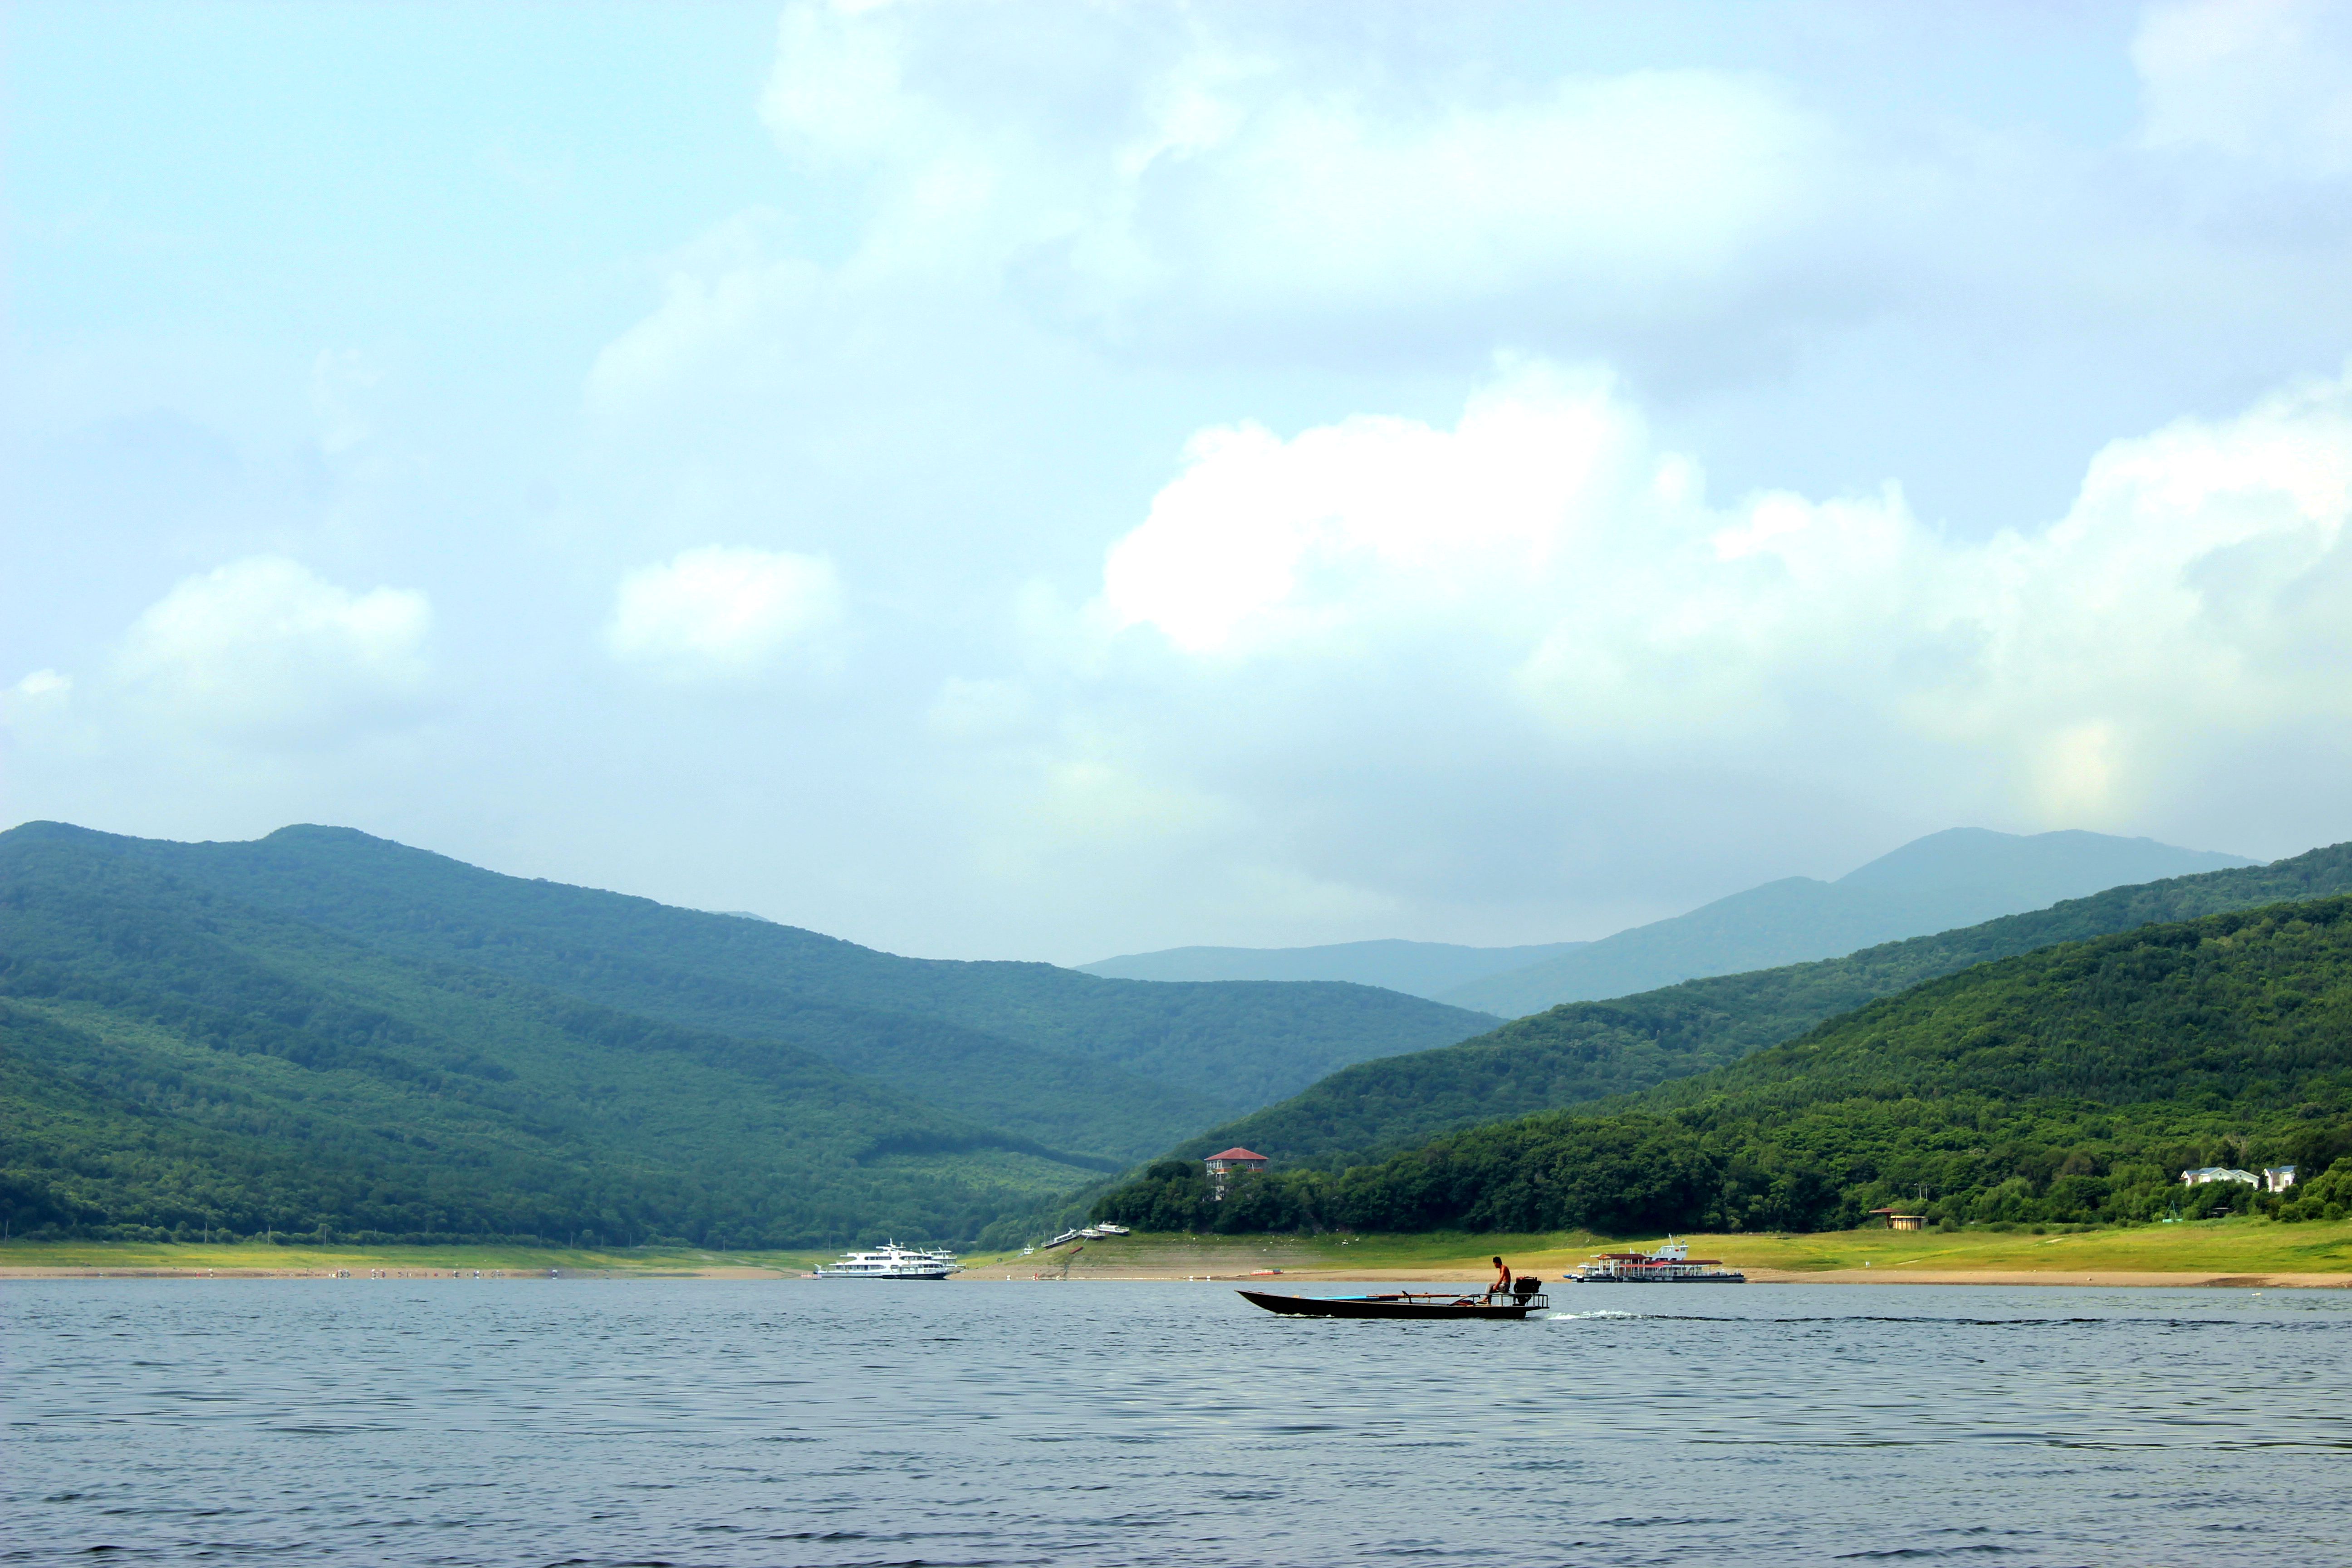 千姿百态的松花湖,引人入胜,是游客们的天堂